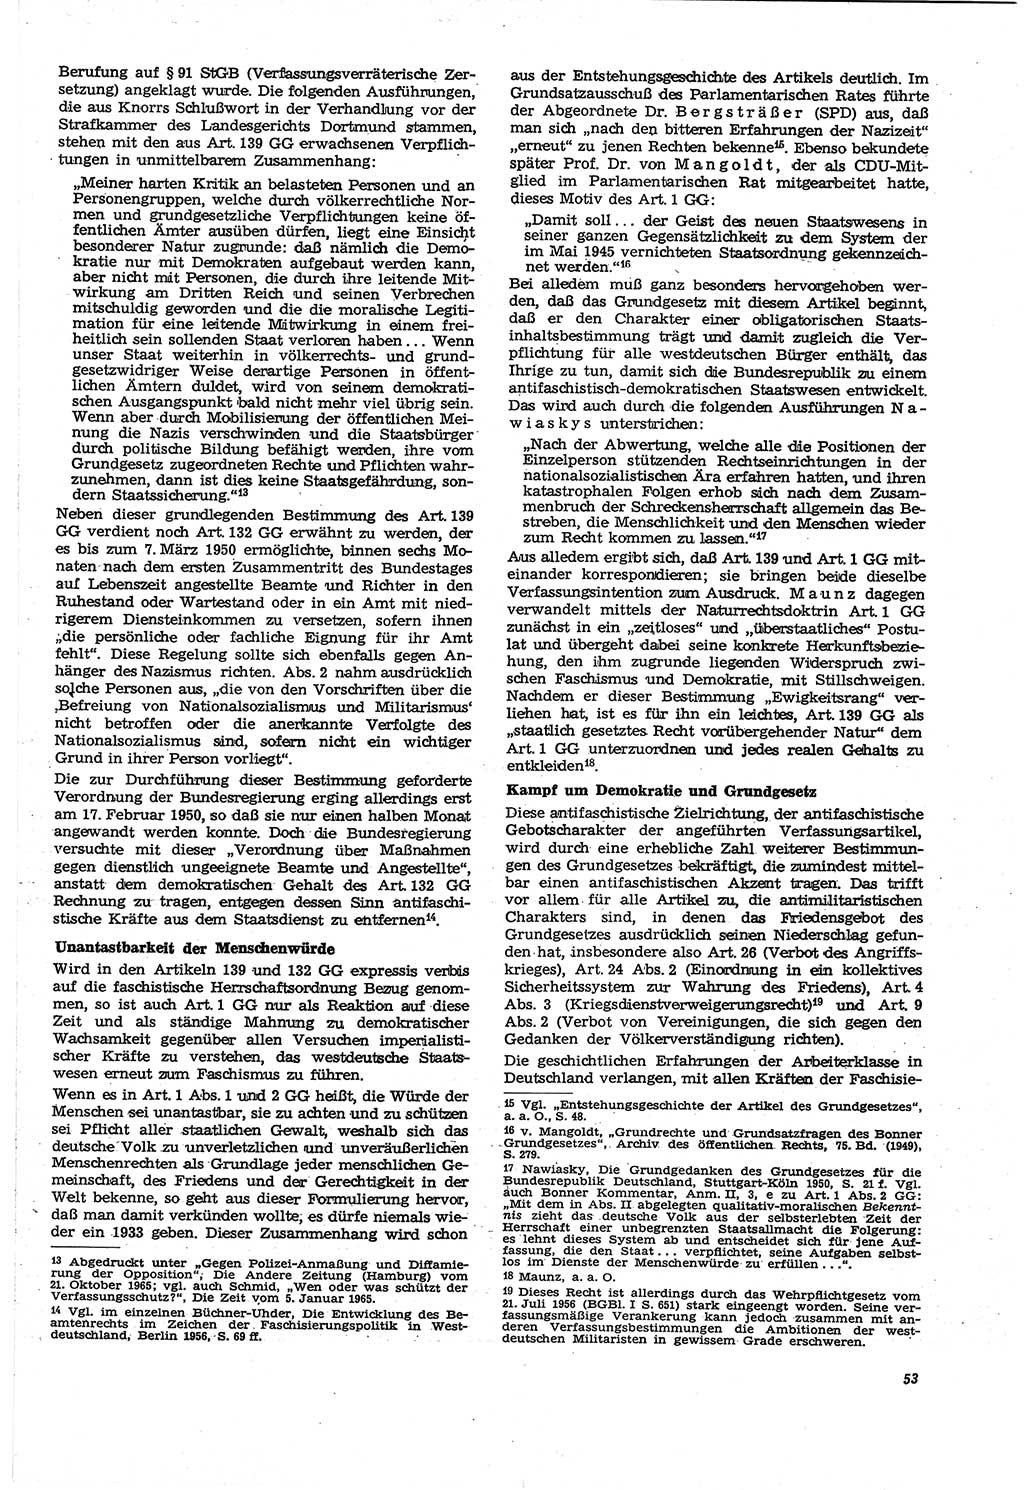 Neue Justiz (NJ), Zeitschrift für Recht und Rechtswissenschaft [Deutsche Demokratische Republik (DDR)], 21. Jahrgang 1967, Seite 53 (NJ DDR 1967, S. 53)